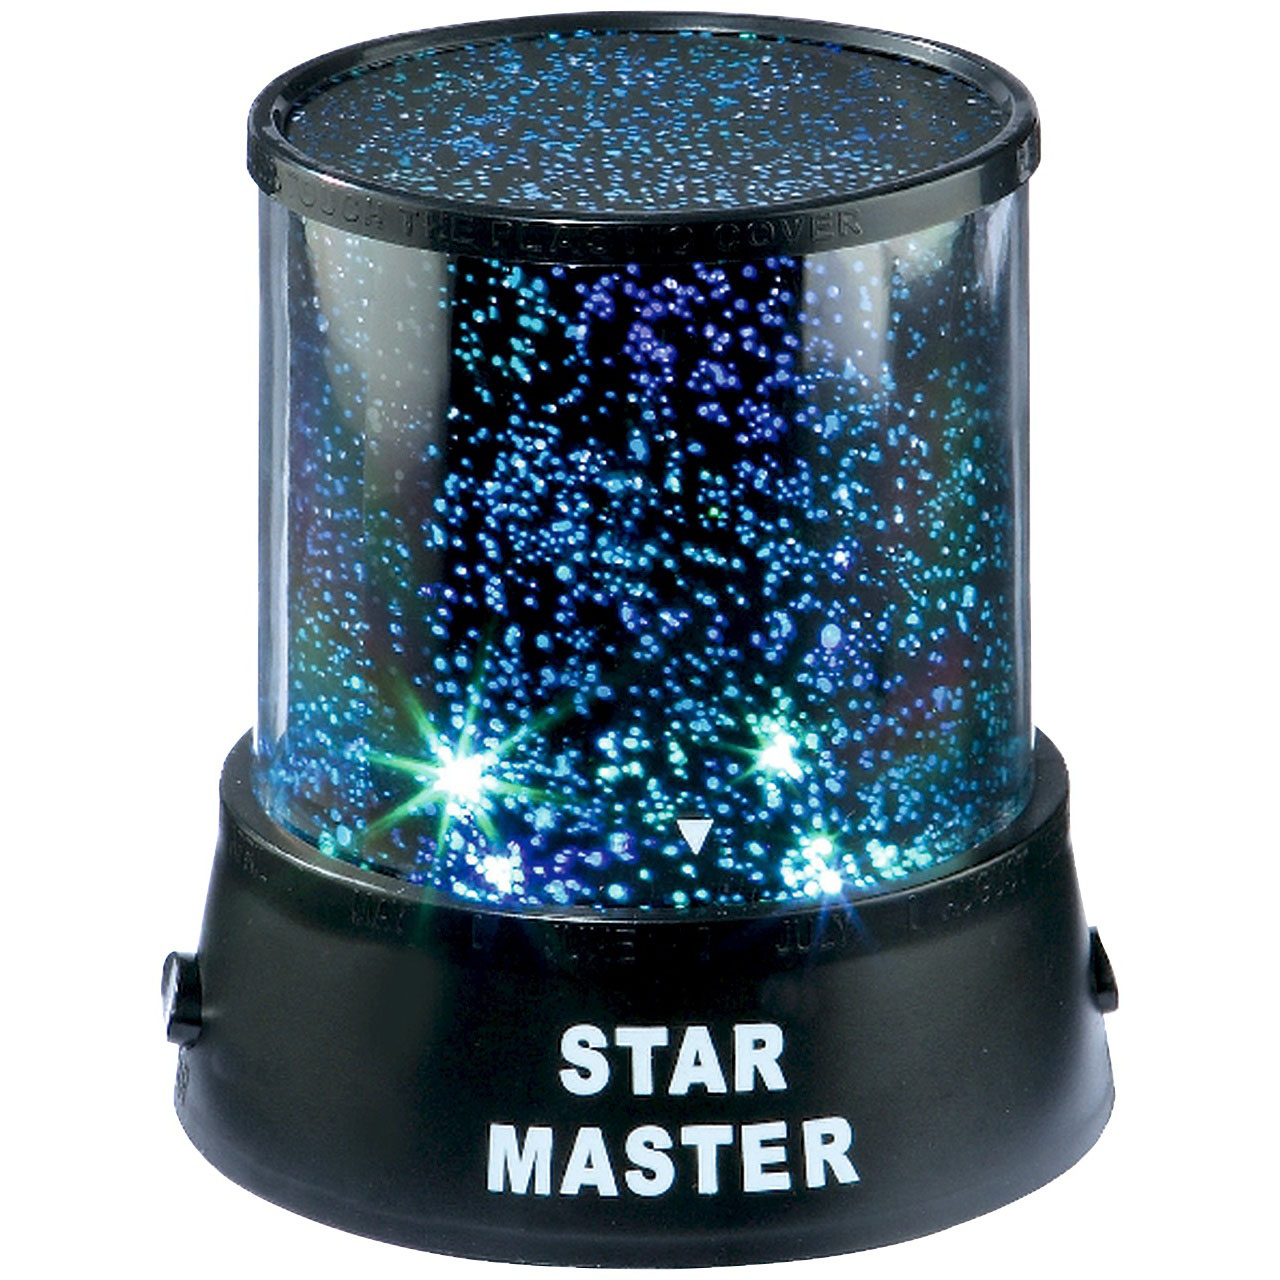 Star Master Bedroom Light Projector